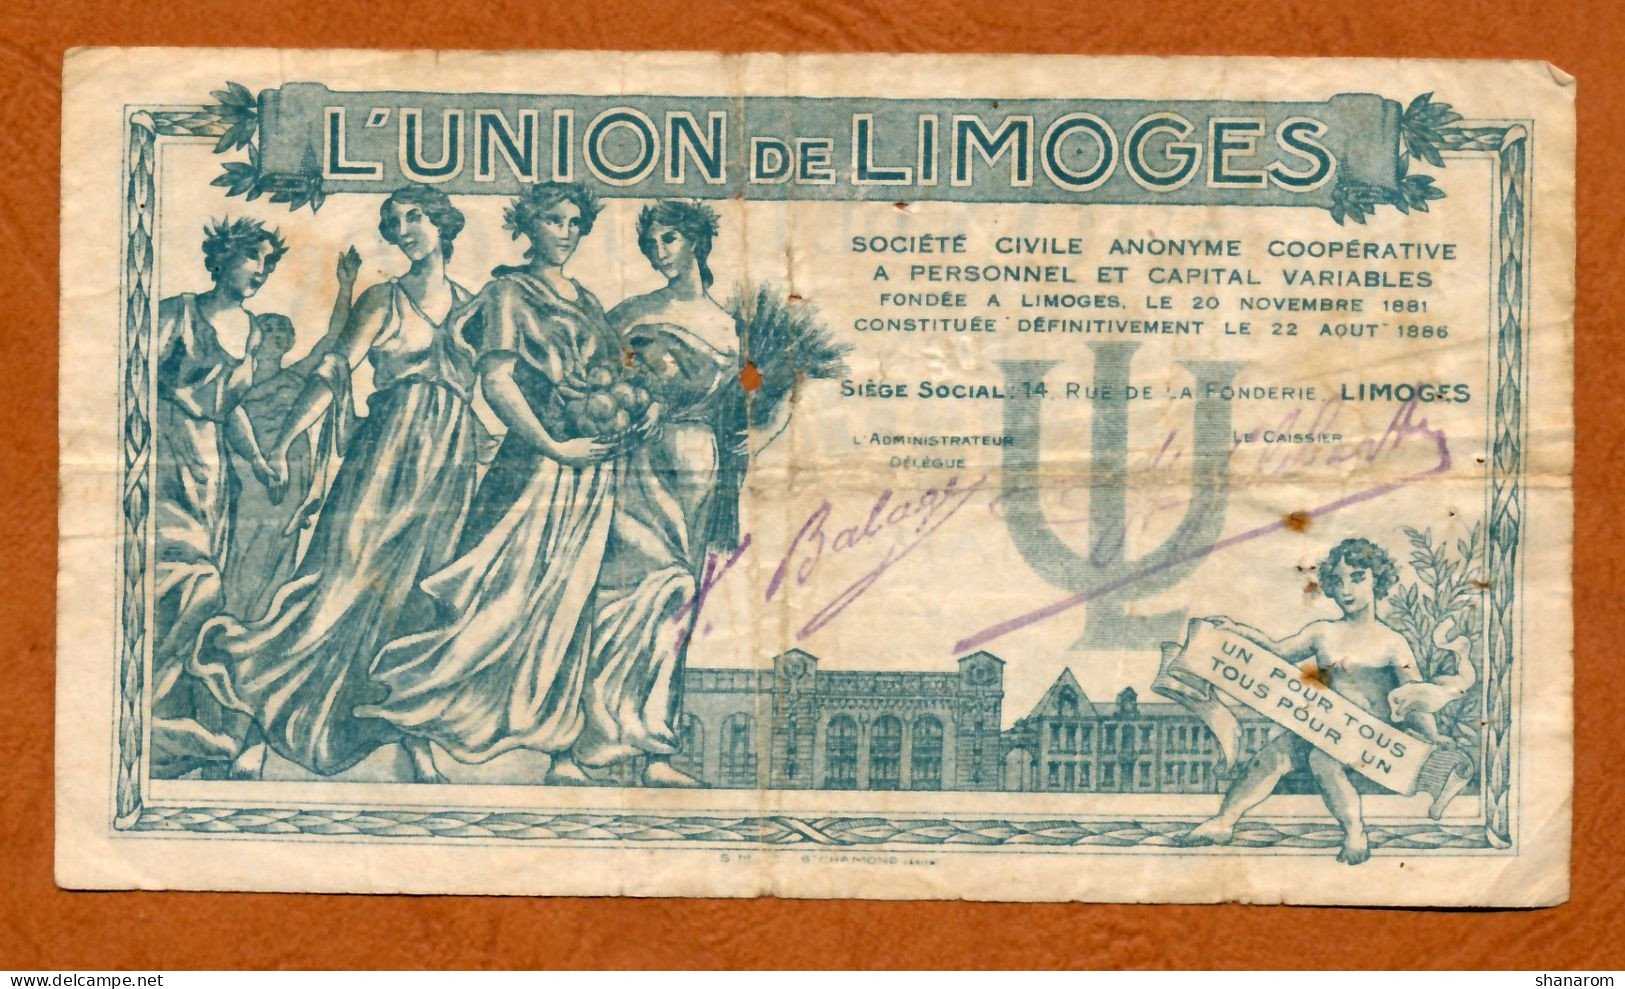 1935 // BON COMMERCIAL // LIMOGES (Haute-Vienne 87) // L'UNION // Bon De Cinq Francs - Bons & Nécessité